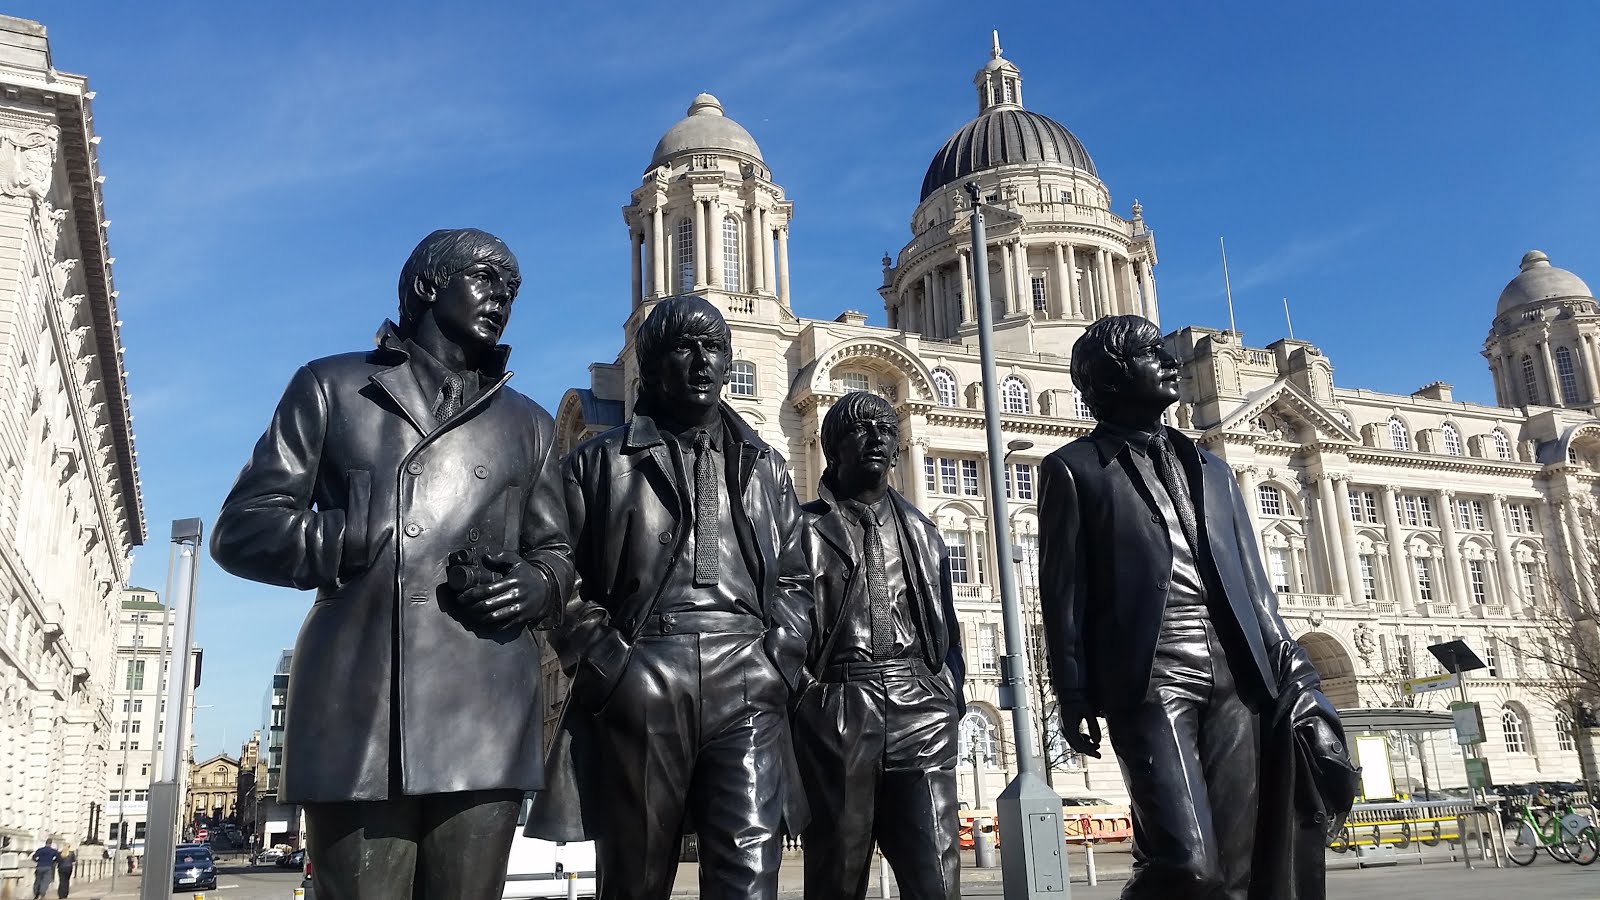 Uma overdose de Beatles em Liverpool — Parte 1 | BISELHO - Crônicas e contos